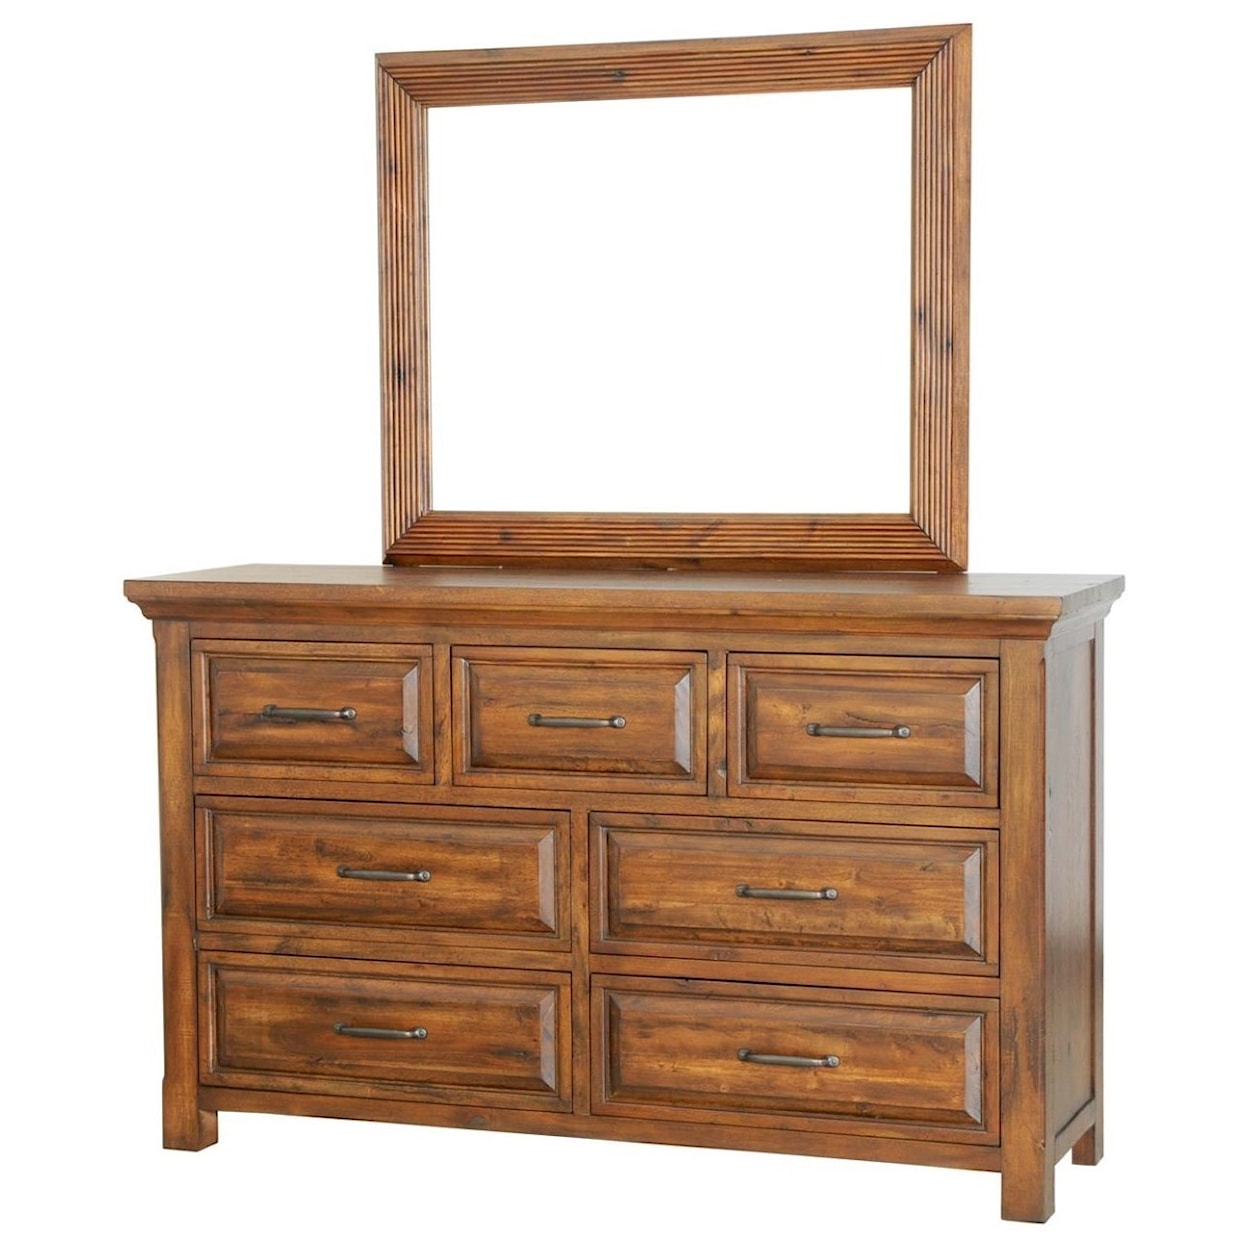 Napa Furniture Design Hill Crest Dresser with Mirror